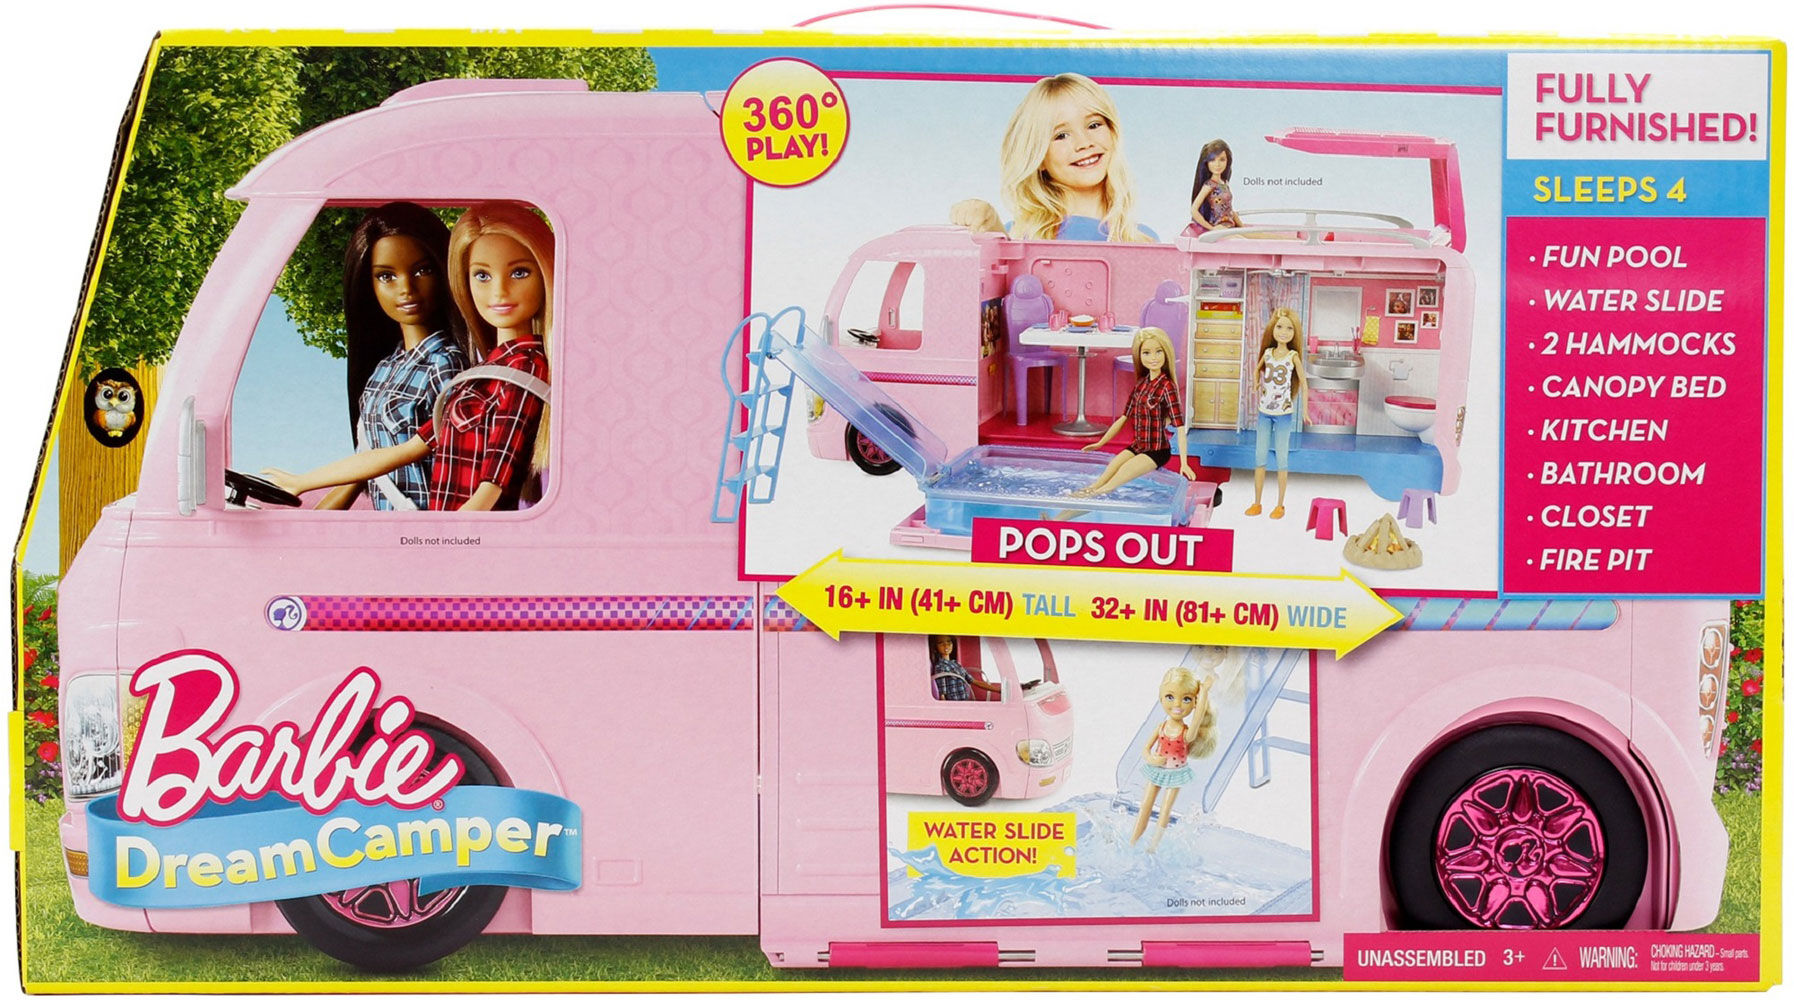 barbie kitchen car